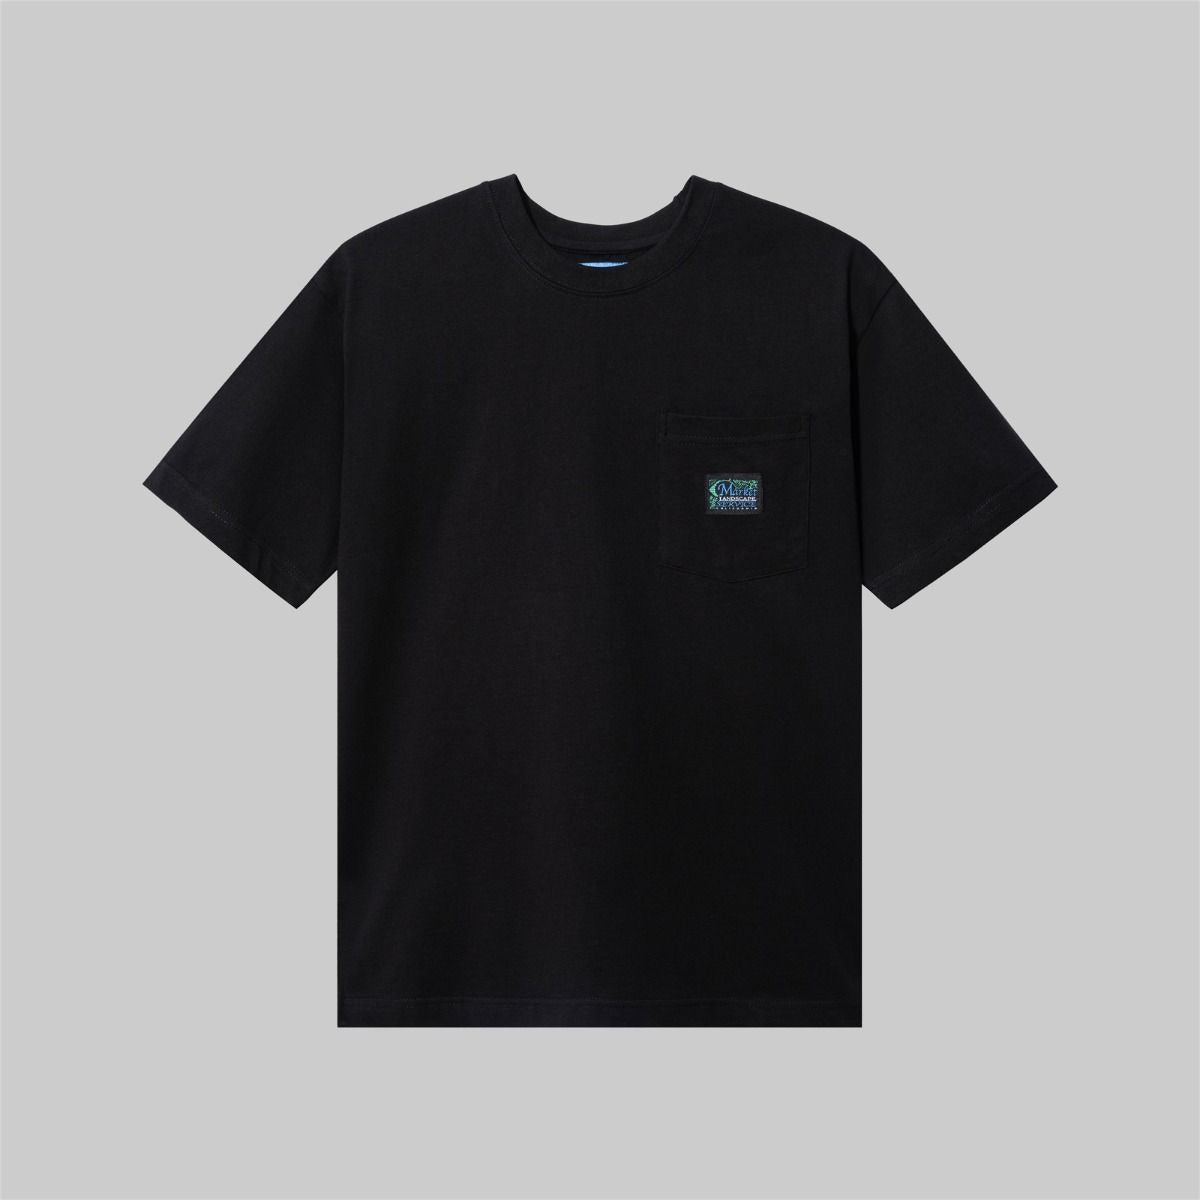 Landscape Service Pocket T-Shirt - Black